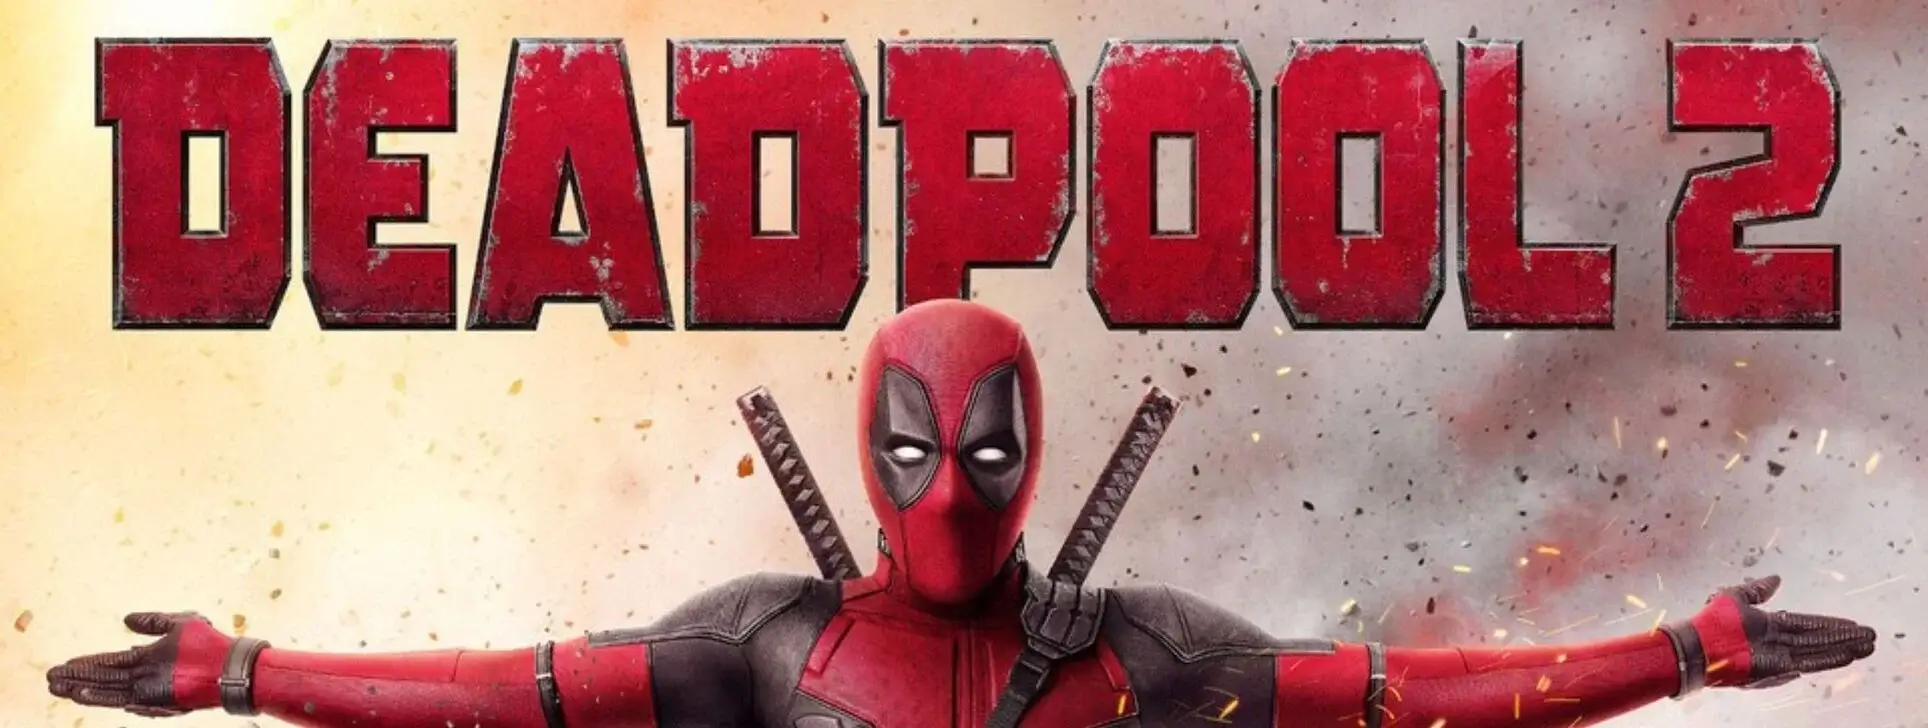 Deadpool 2 Extended Cut 3D online 2018